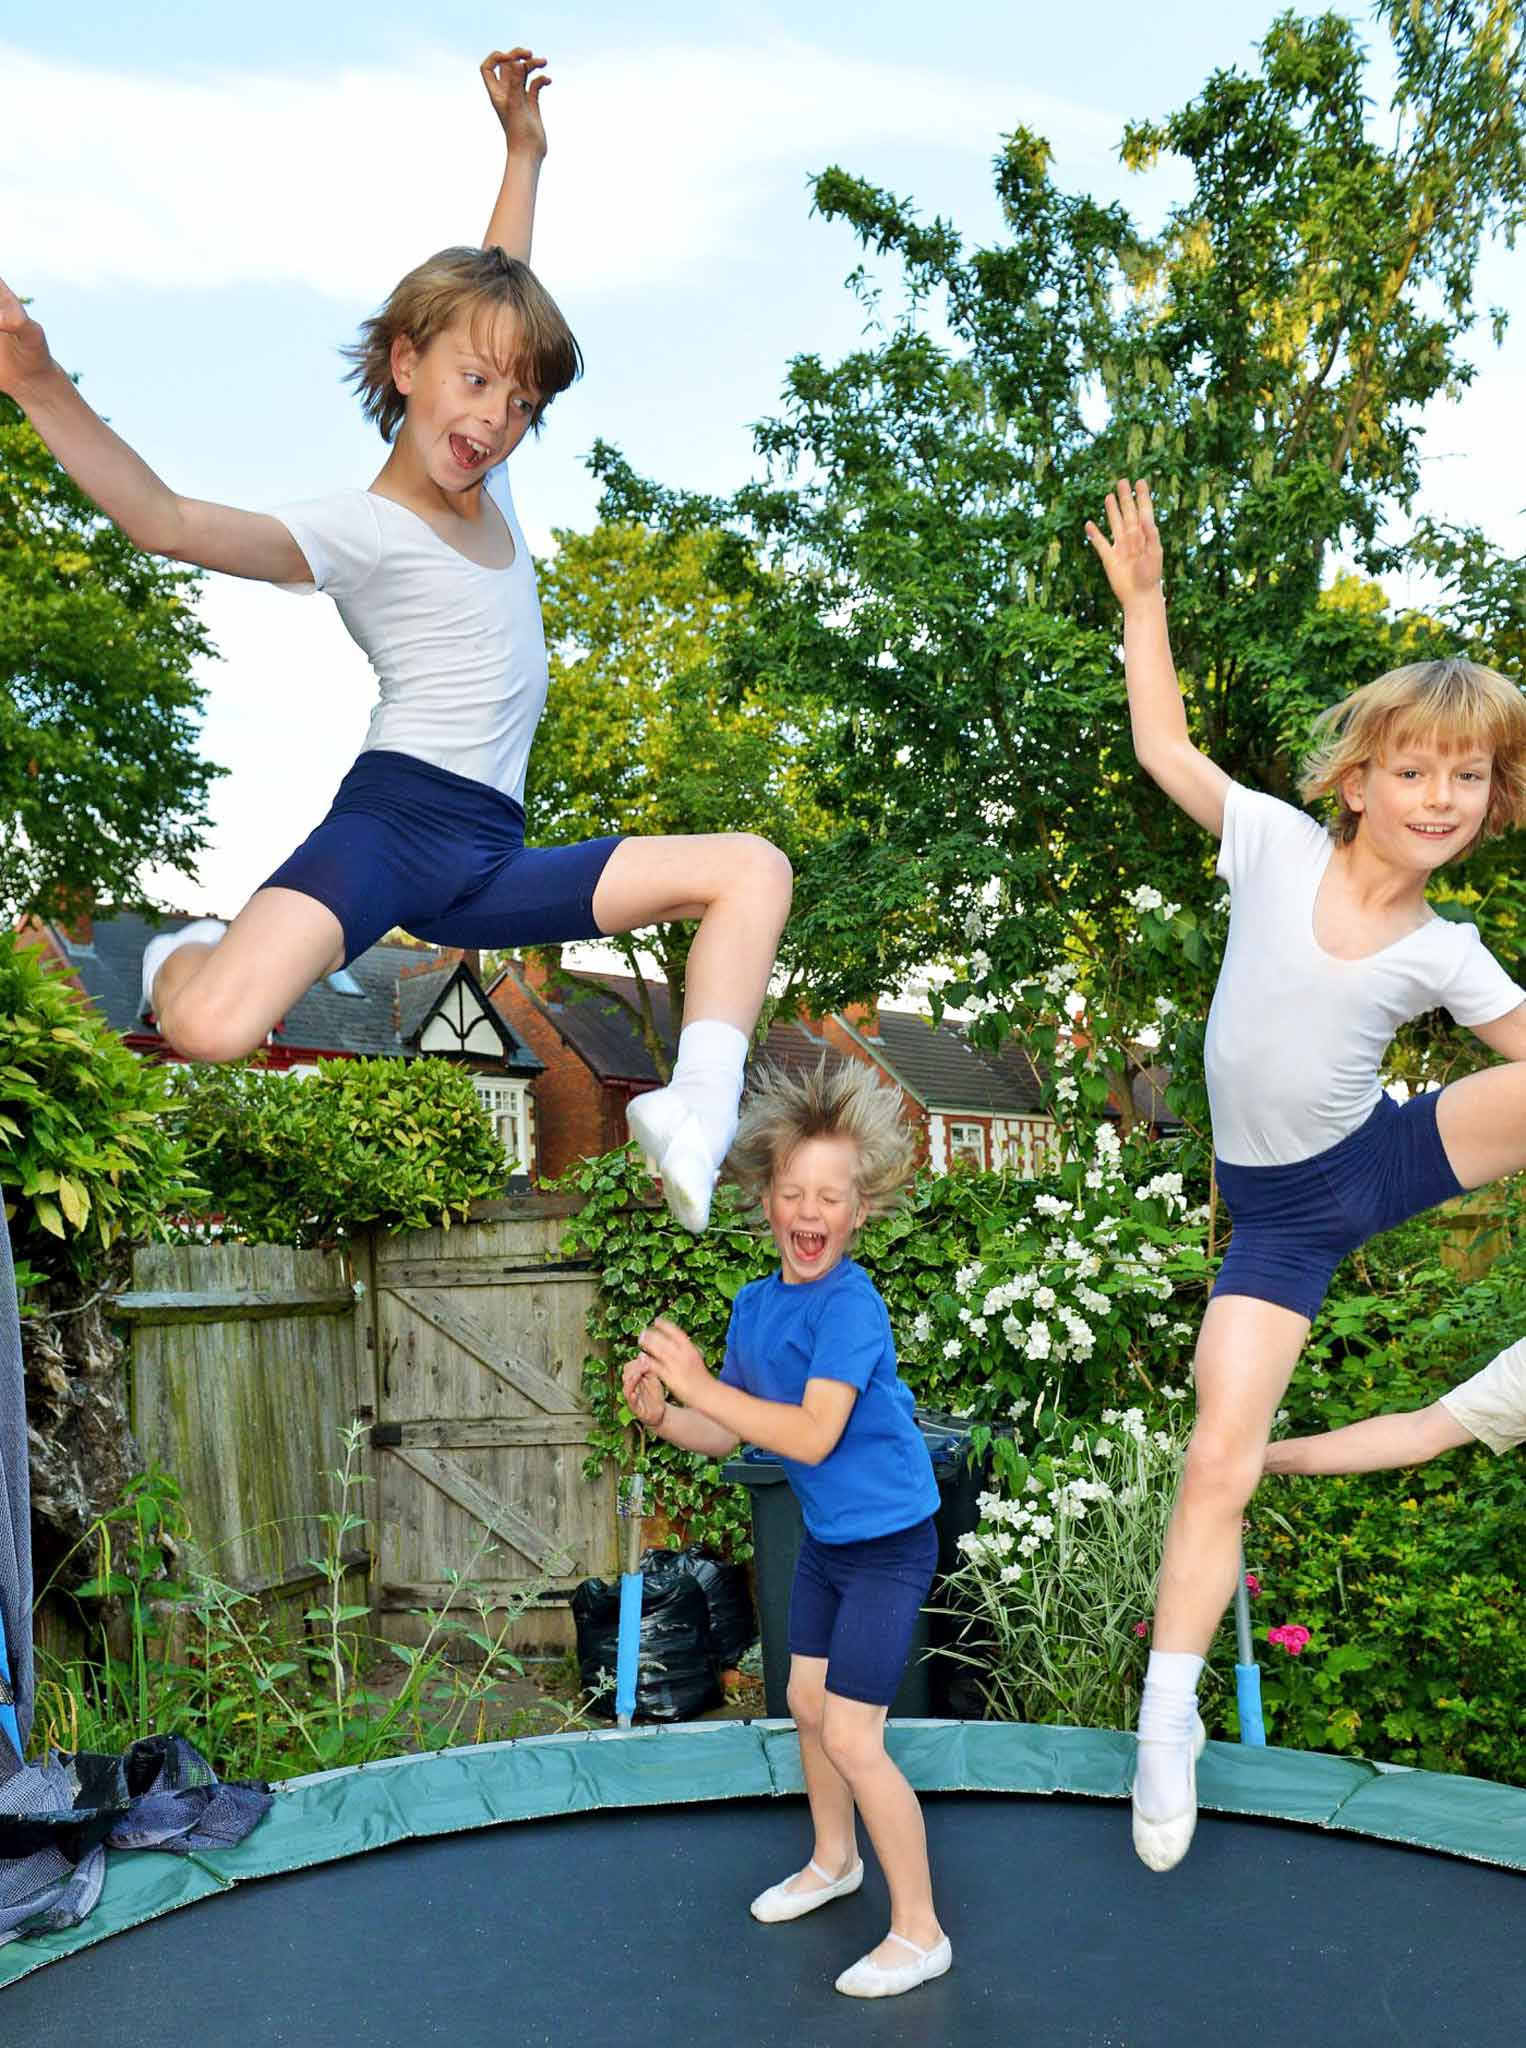 The Kempsey-Fagg boys: Oscar, 11, Arlie, 6, and Marlo, 8, show their flexibility